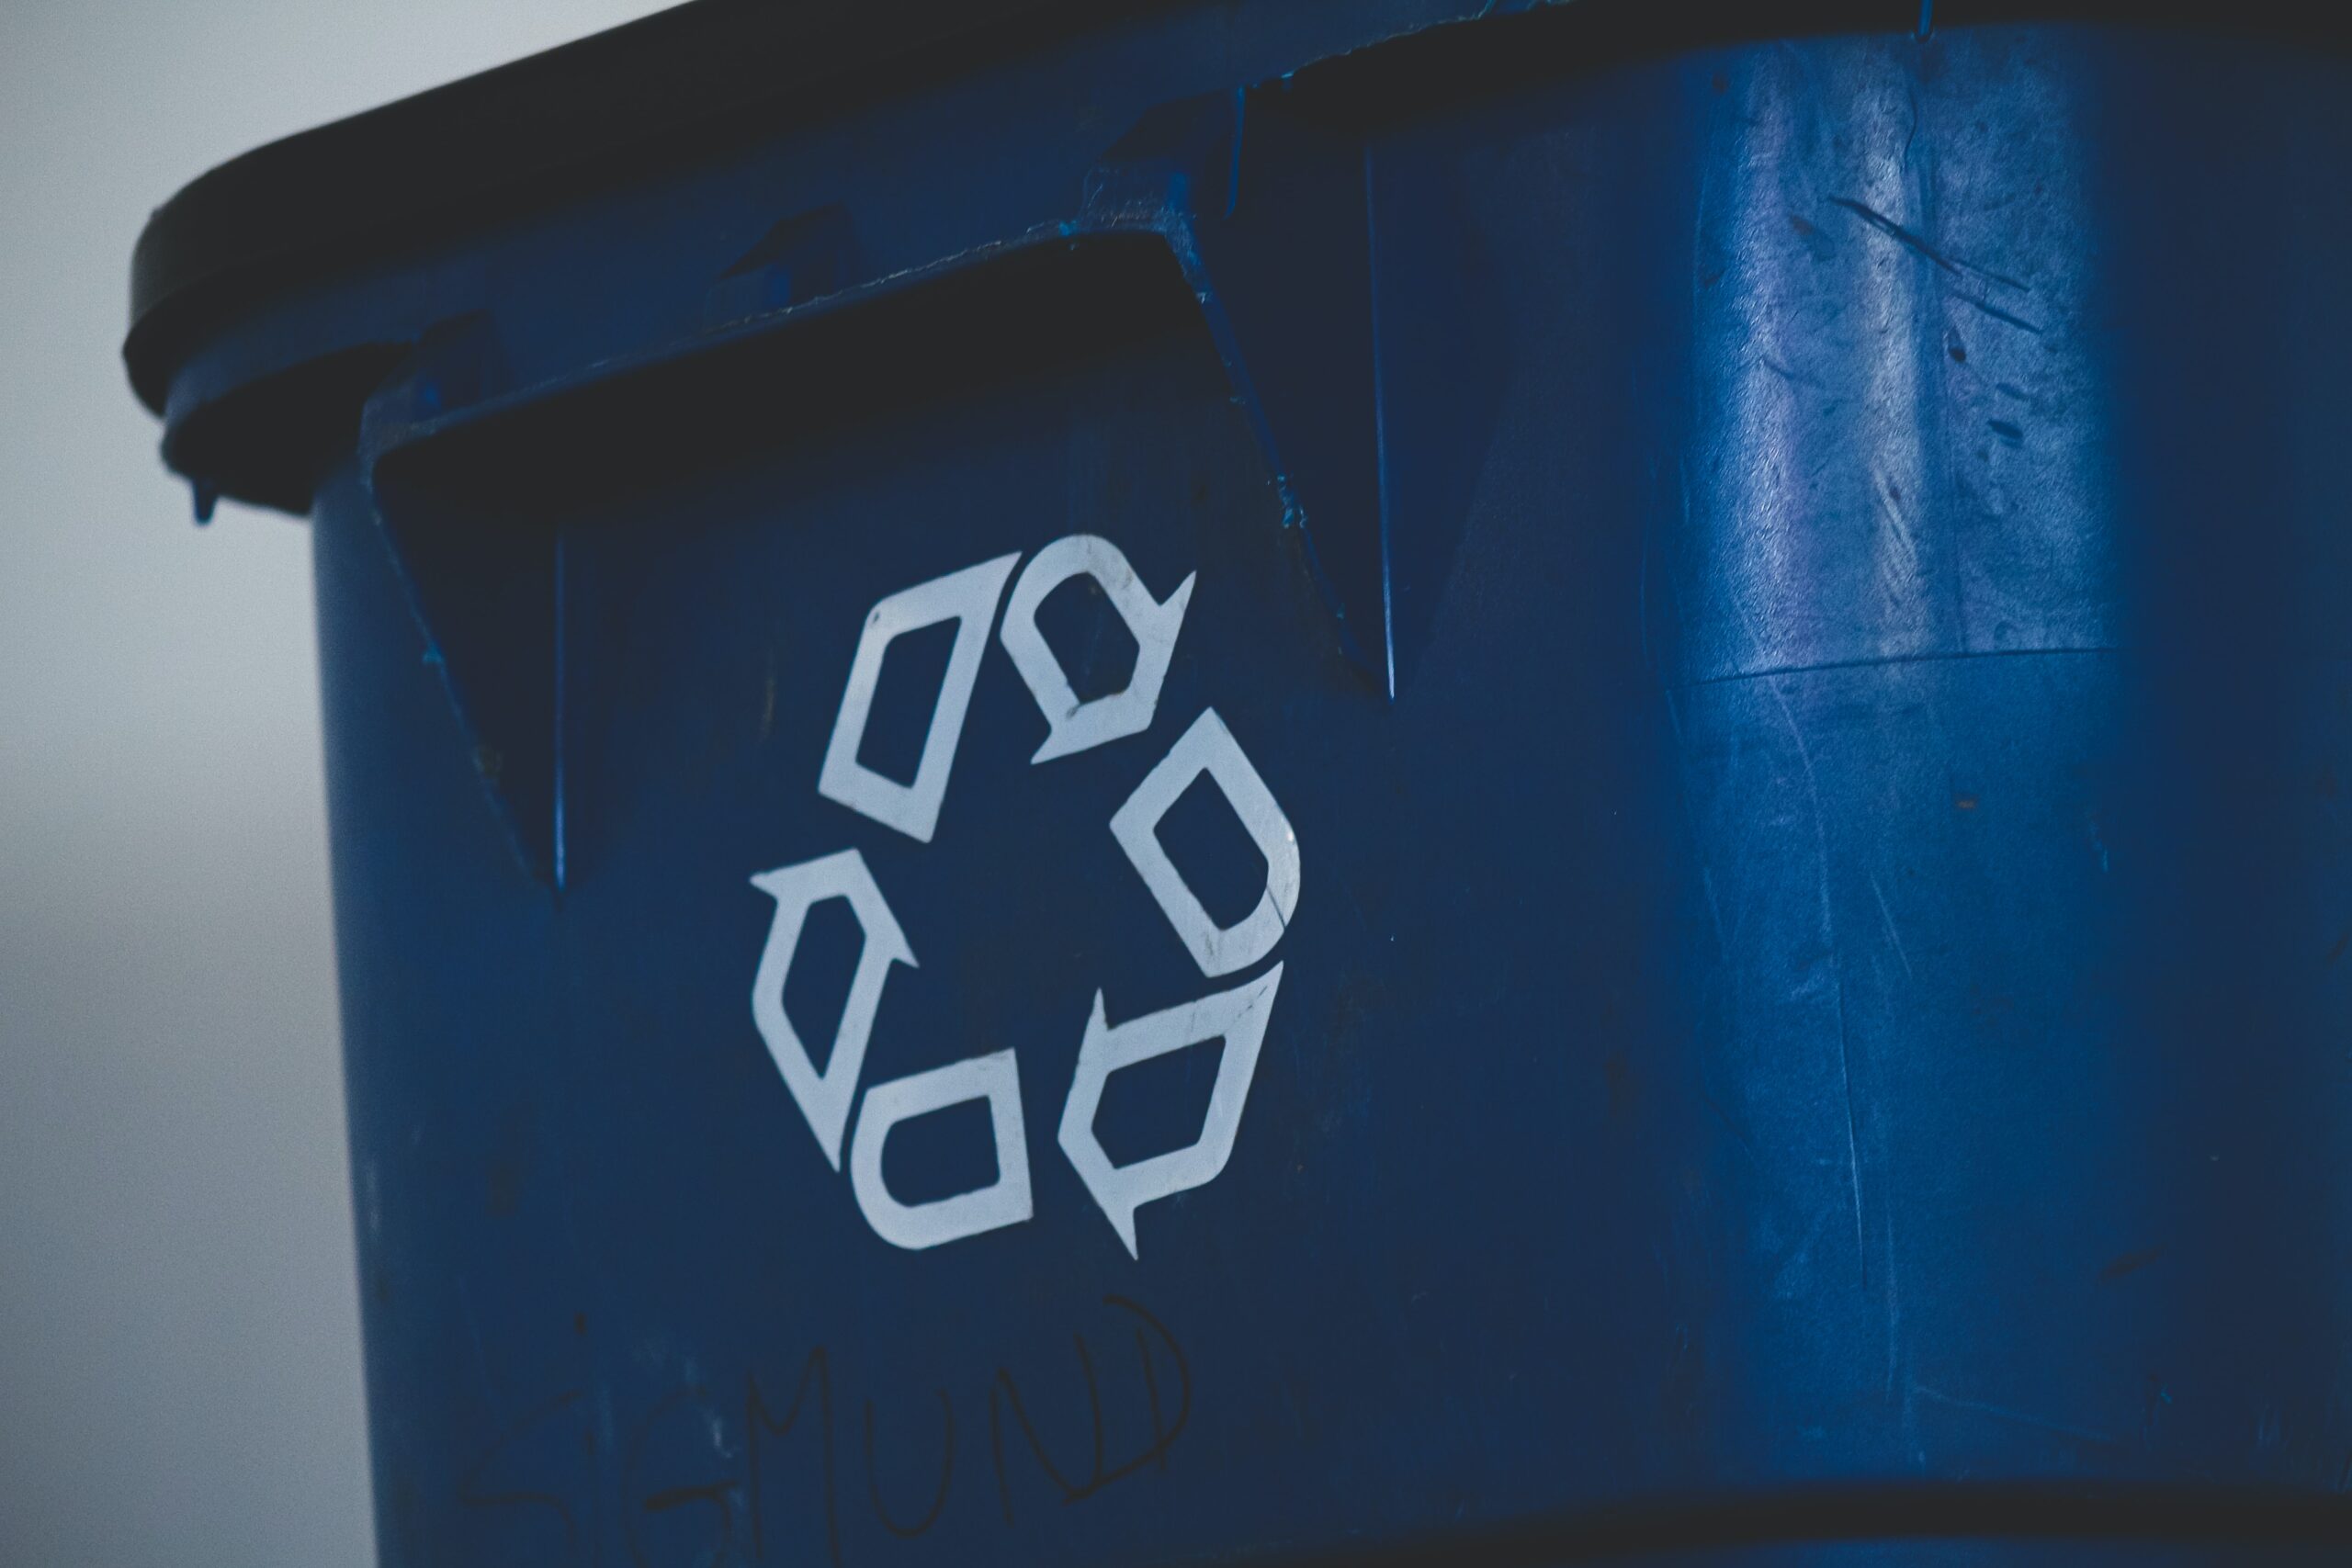 recycling logo on bin.